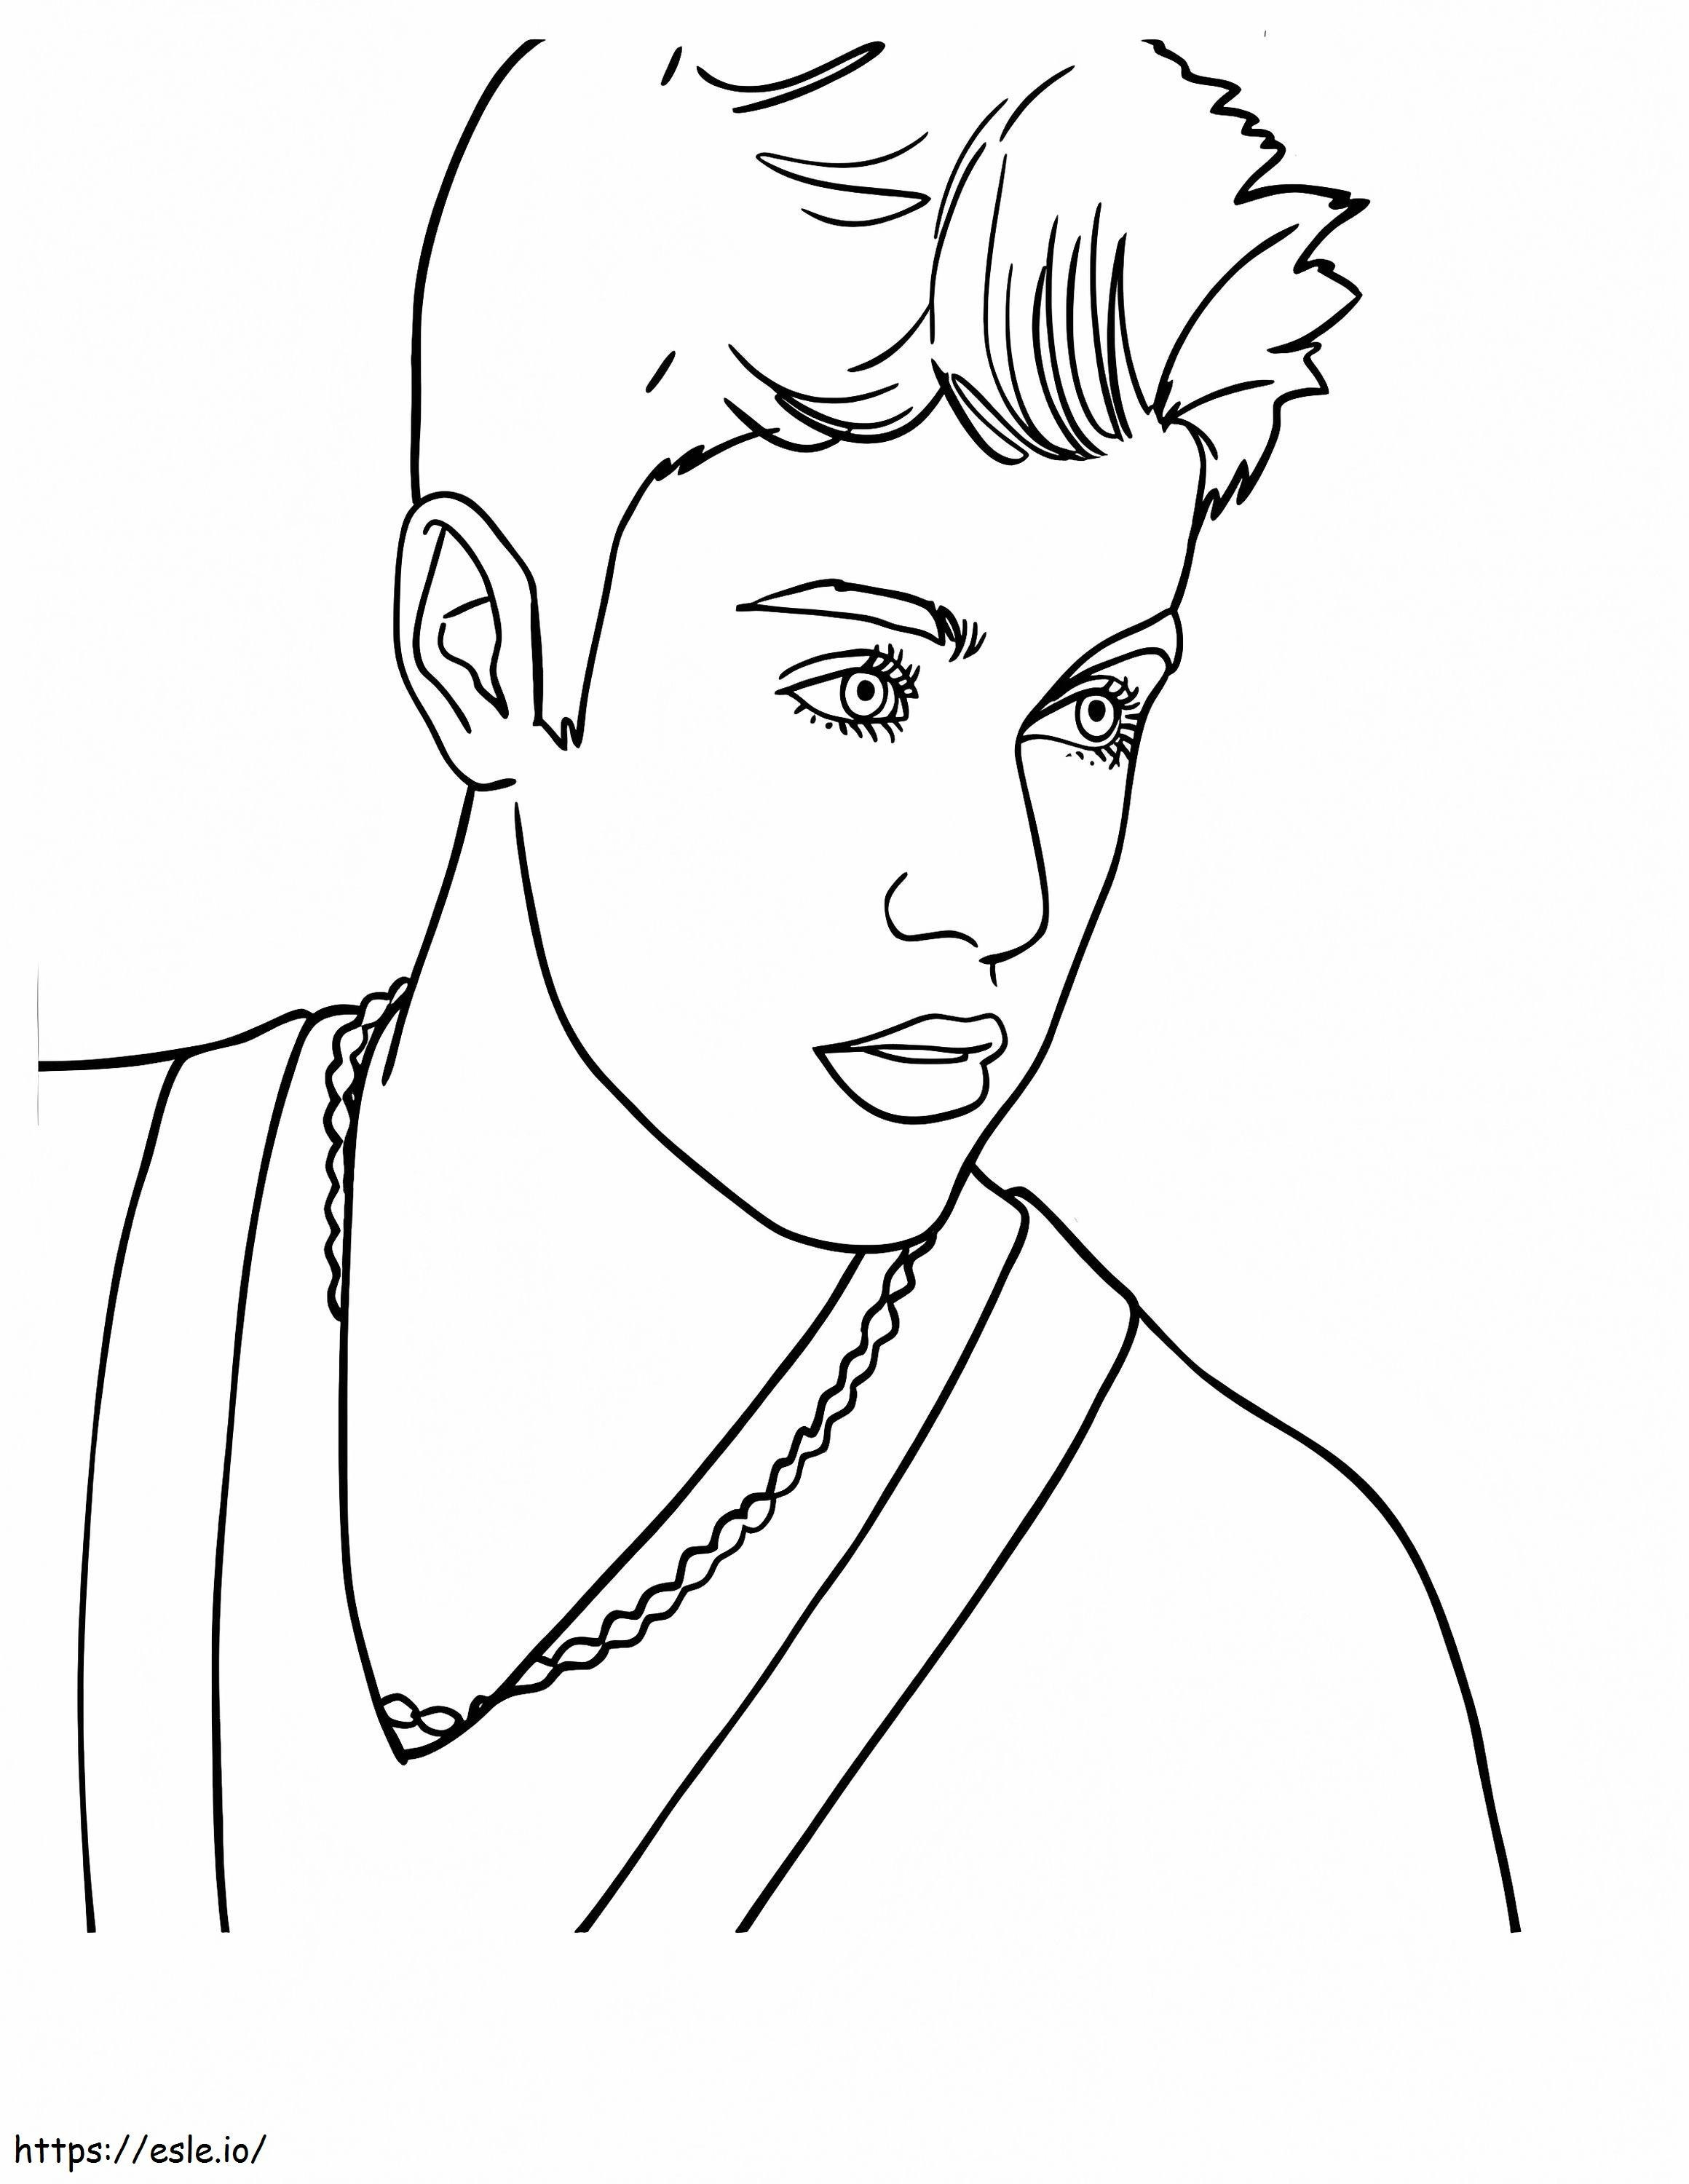 1541131259 Kanadalı Pop Şarkıcısı Justin Bieber Justin Bieber'da boyama